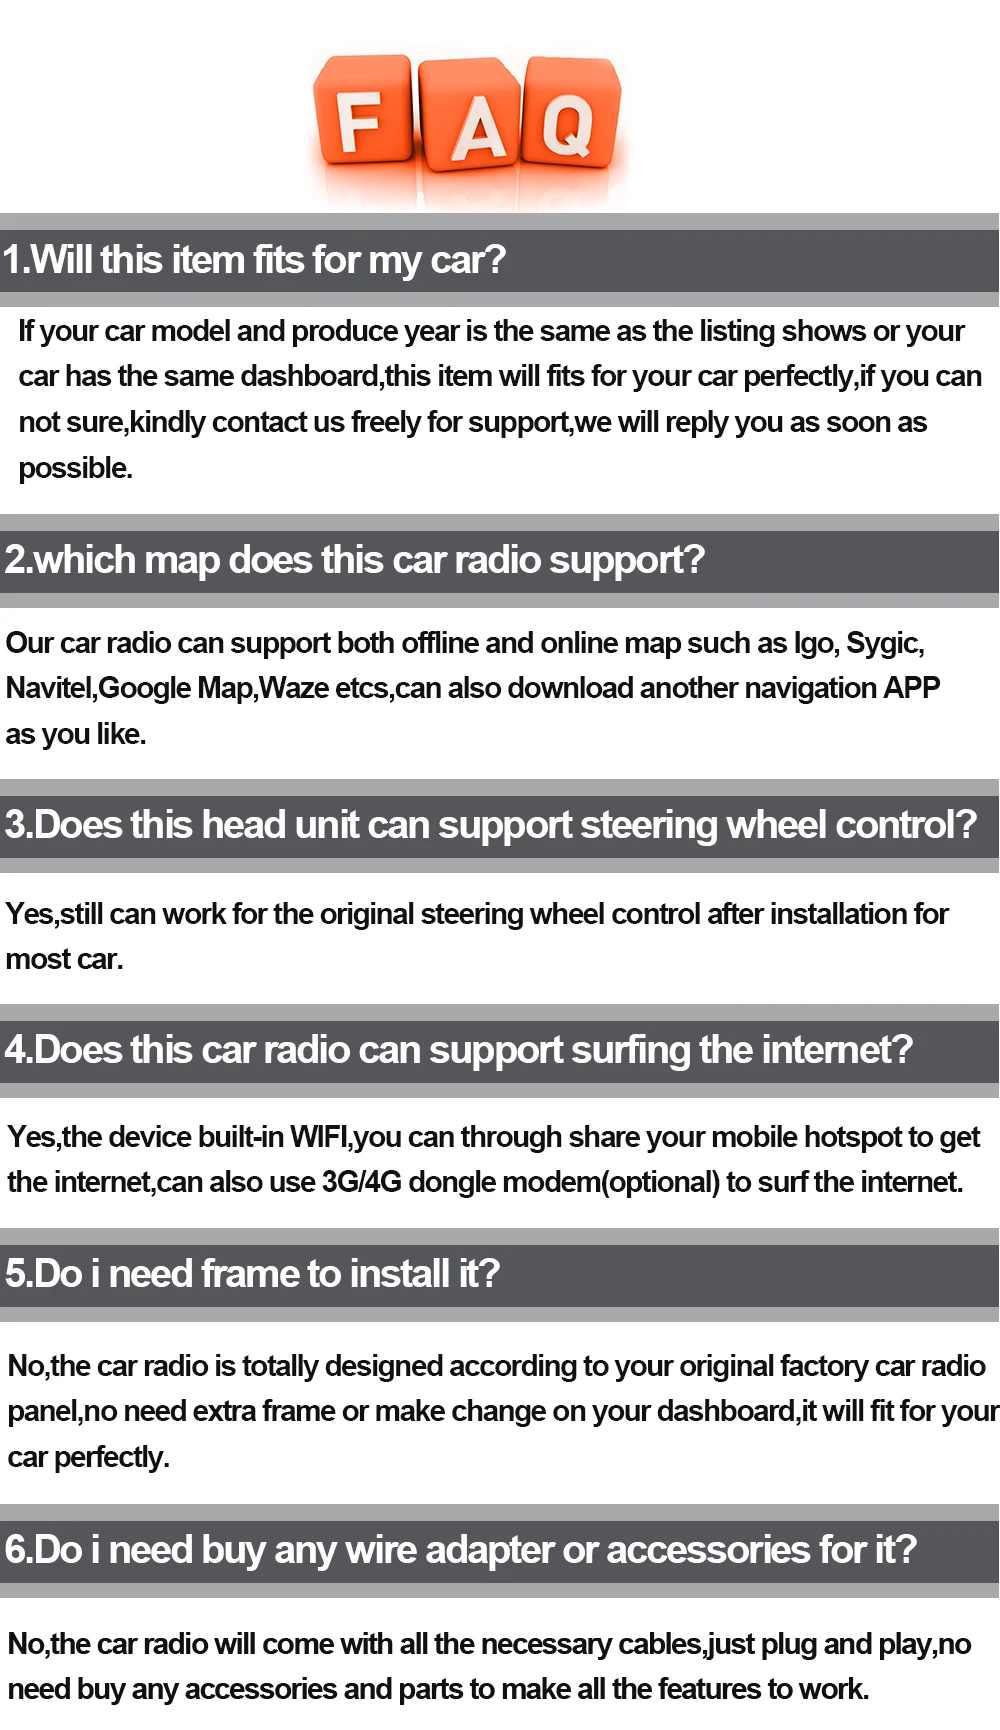 4 ГБ ОЗУ Android 8,0 Автомобильный gps навигатор для Toyota Avalon-DVD мультимедиа плеер Автомобильный стерео карта wifi 4G LTE